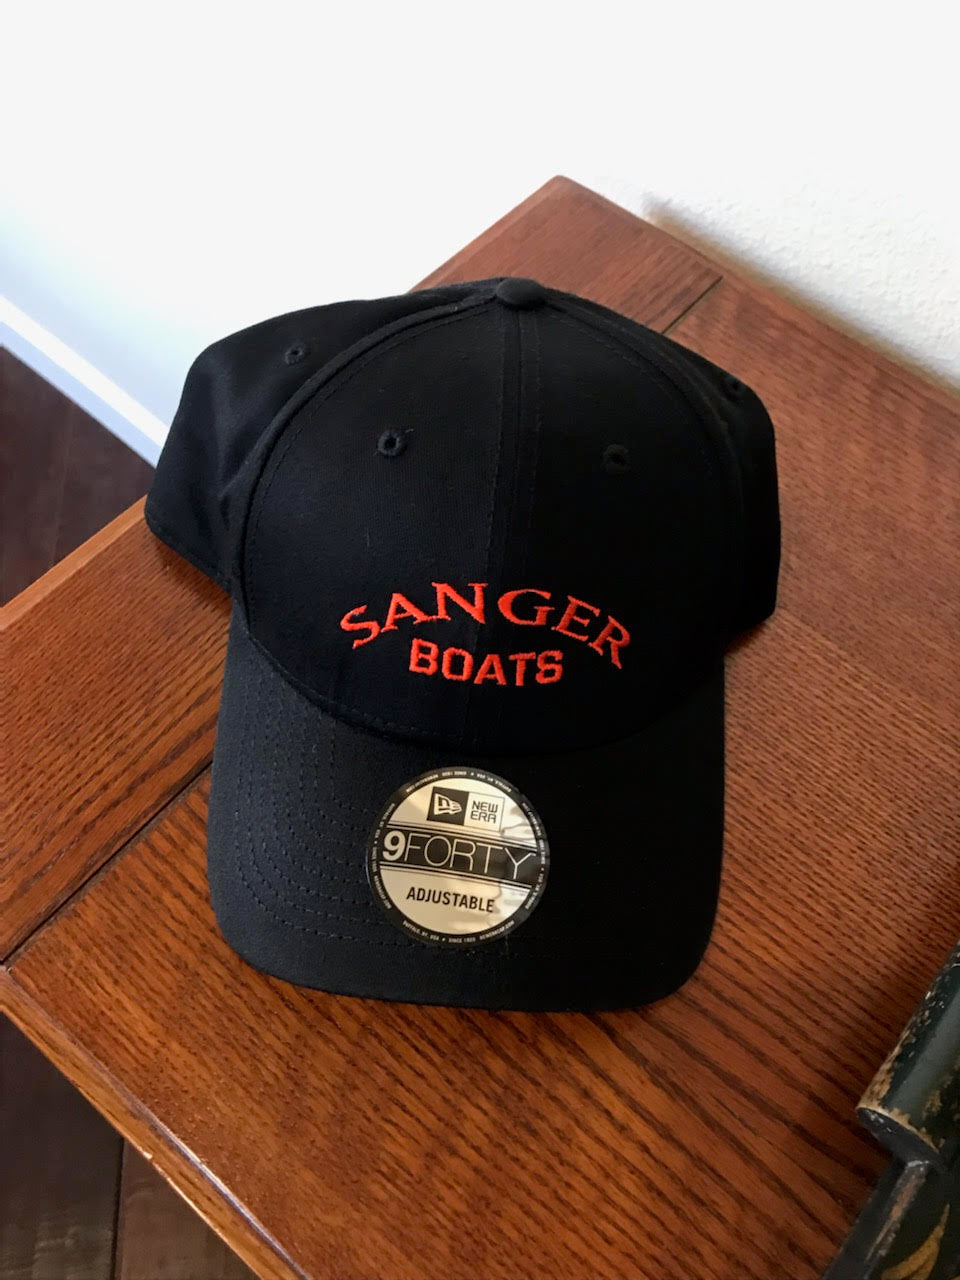 Sanger Boats Black & Red Baseball Cap